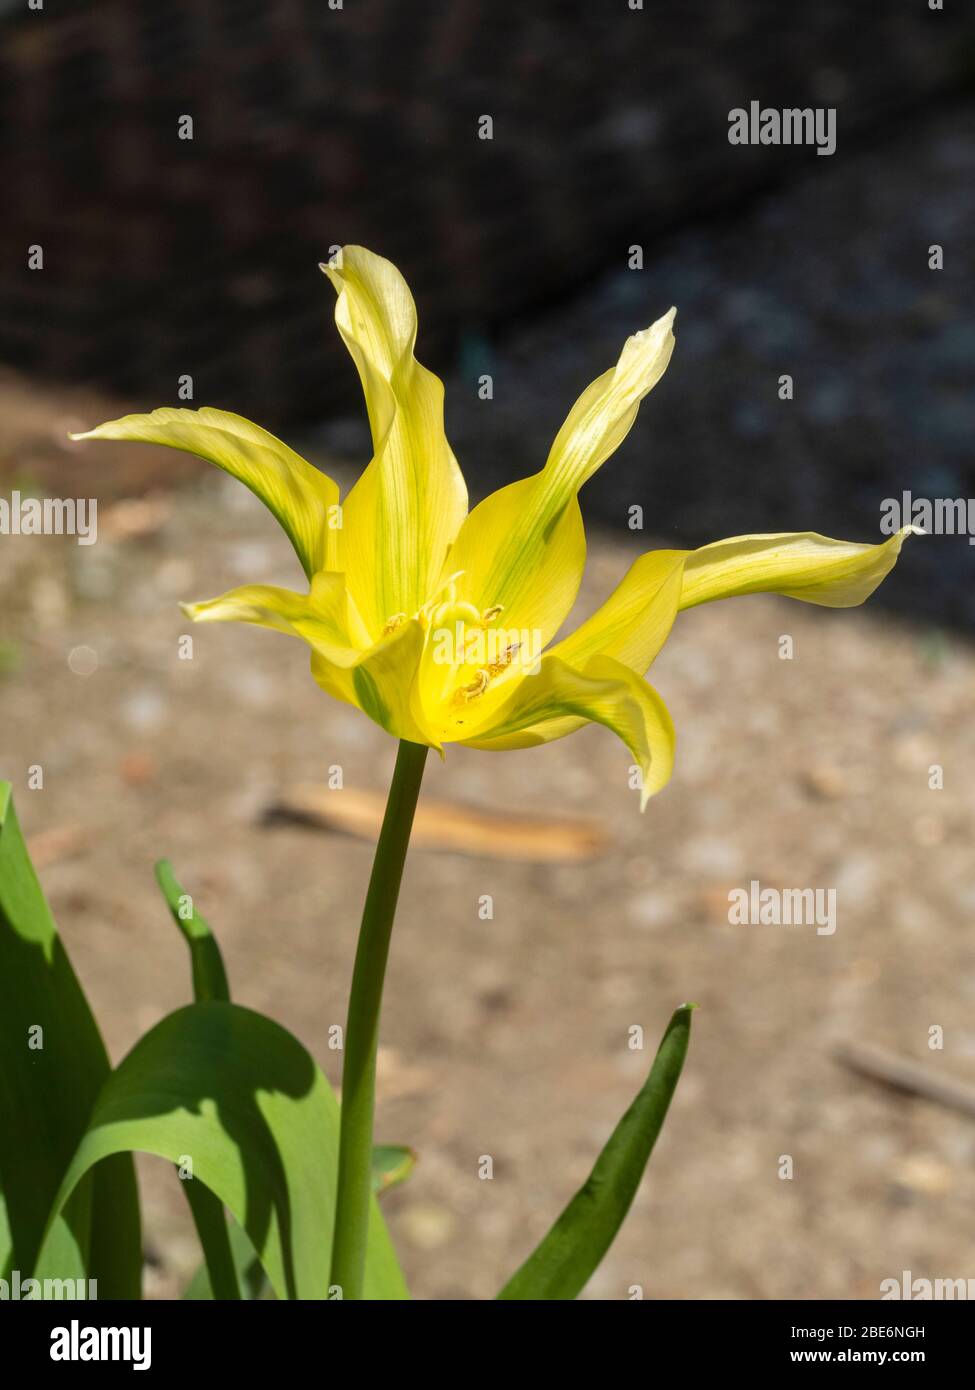 Fiore giallo a righe verdi della primavera fiorita di giglio duro fiorito viridiflora varietà, Tulip 'Green Dance' Foto Stock